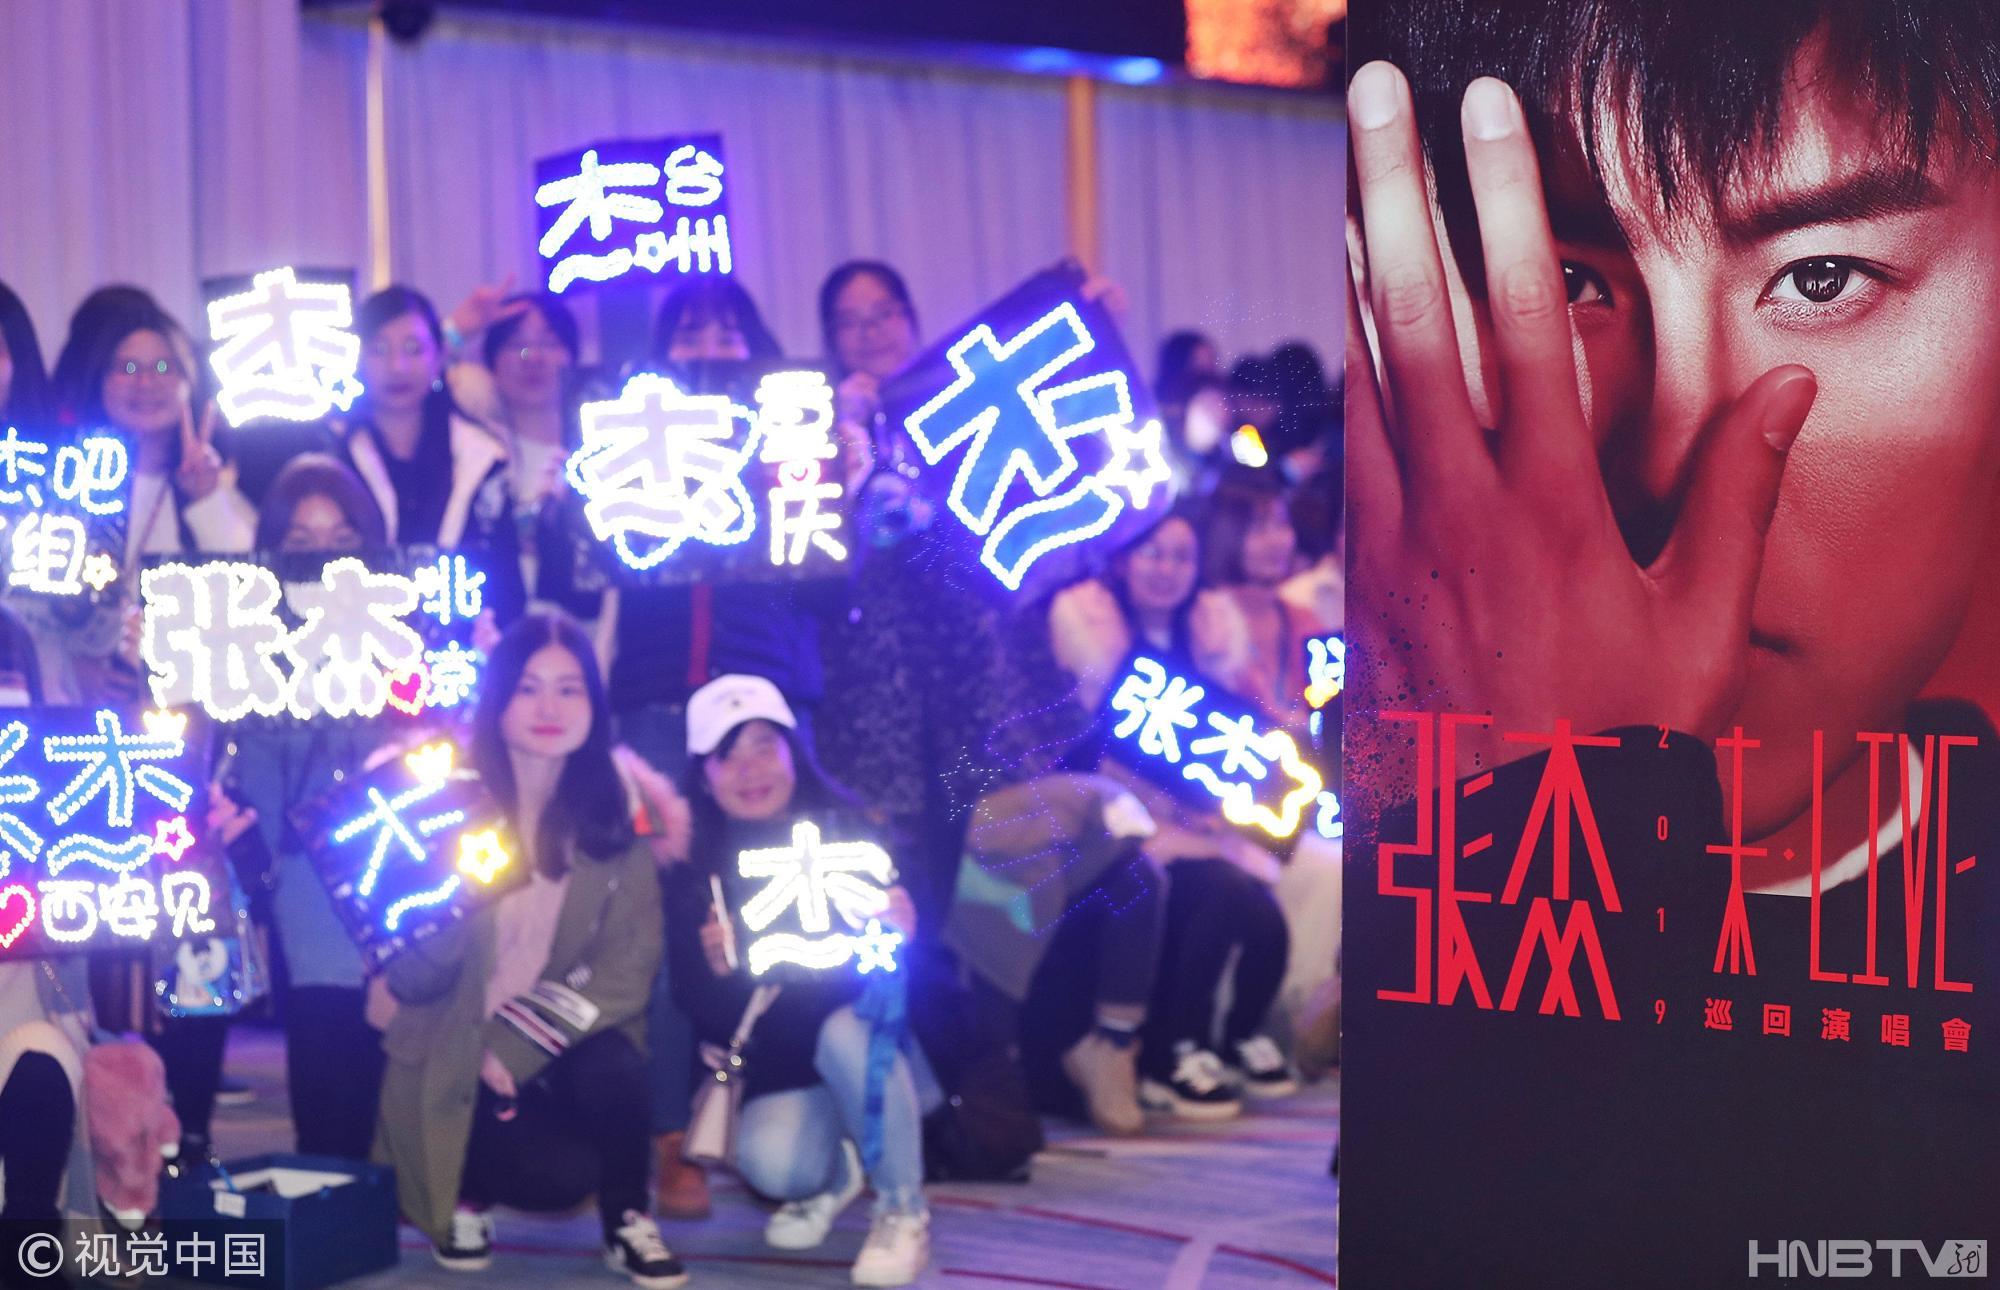 张杰开启2019“未·LIVE”巡回演唱会 黑衣帅气亮相发布会获众多粉丝应援